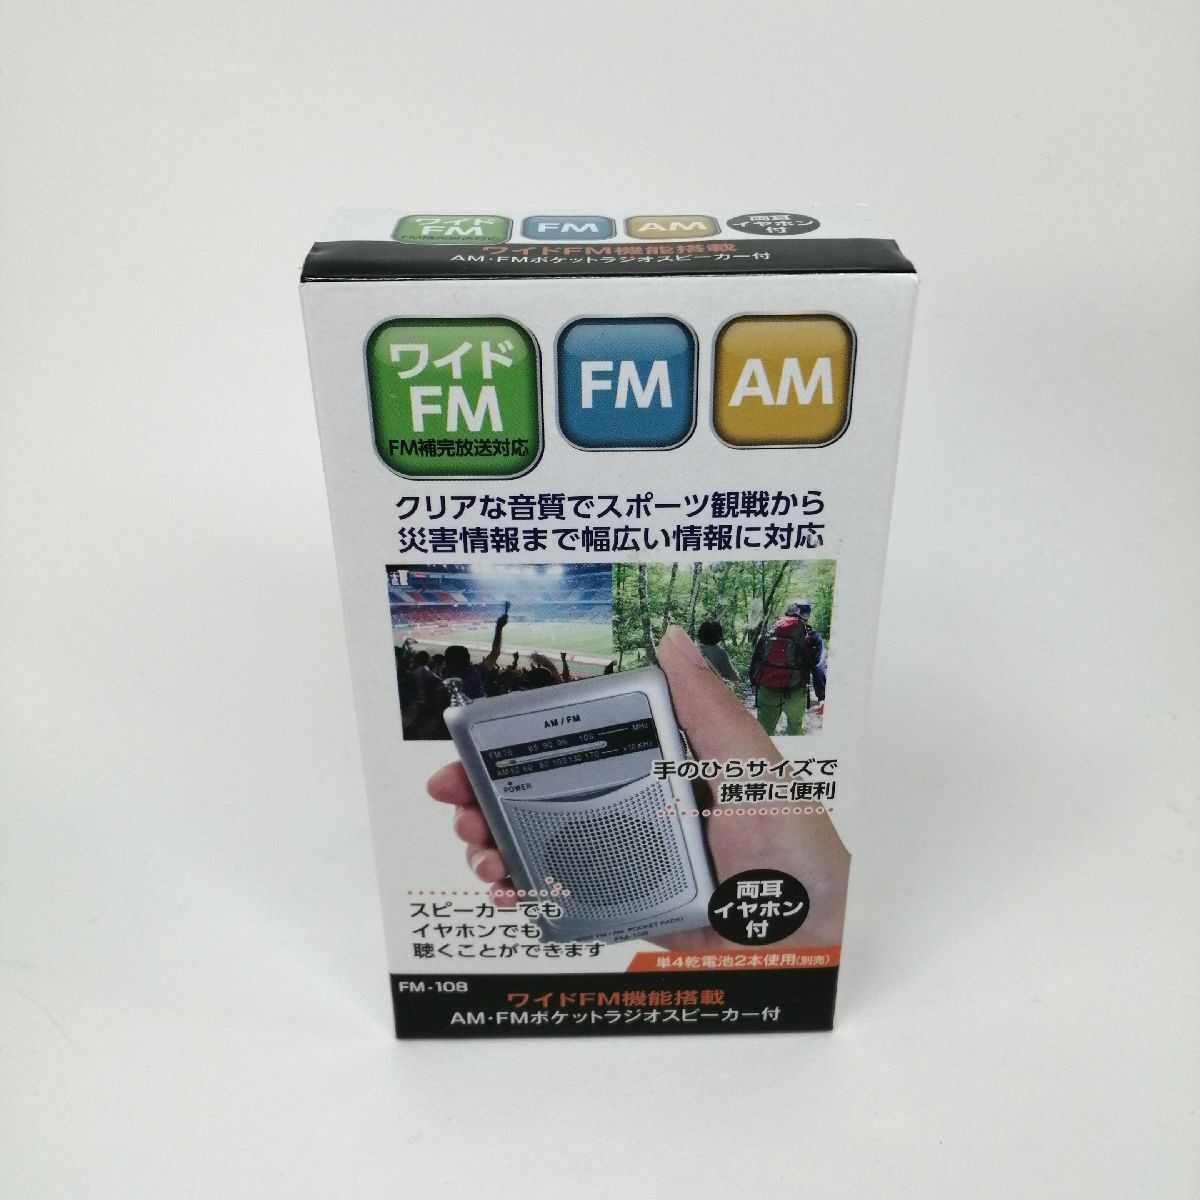 ポケットラジオ AM FM ワイドFM スピーカー クリップ 両耳イヤホン付属 シルバー カクセー FM-108 レターパックOK_画像1